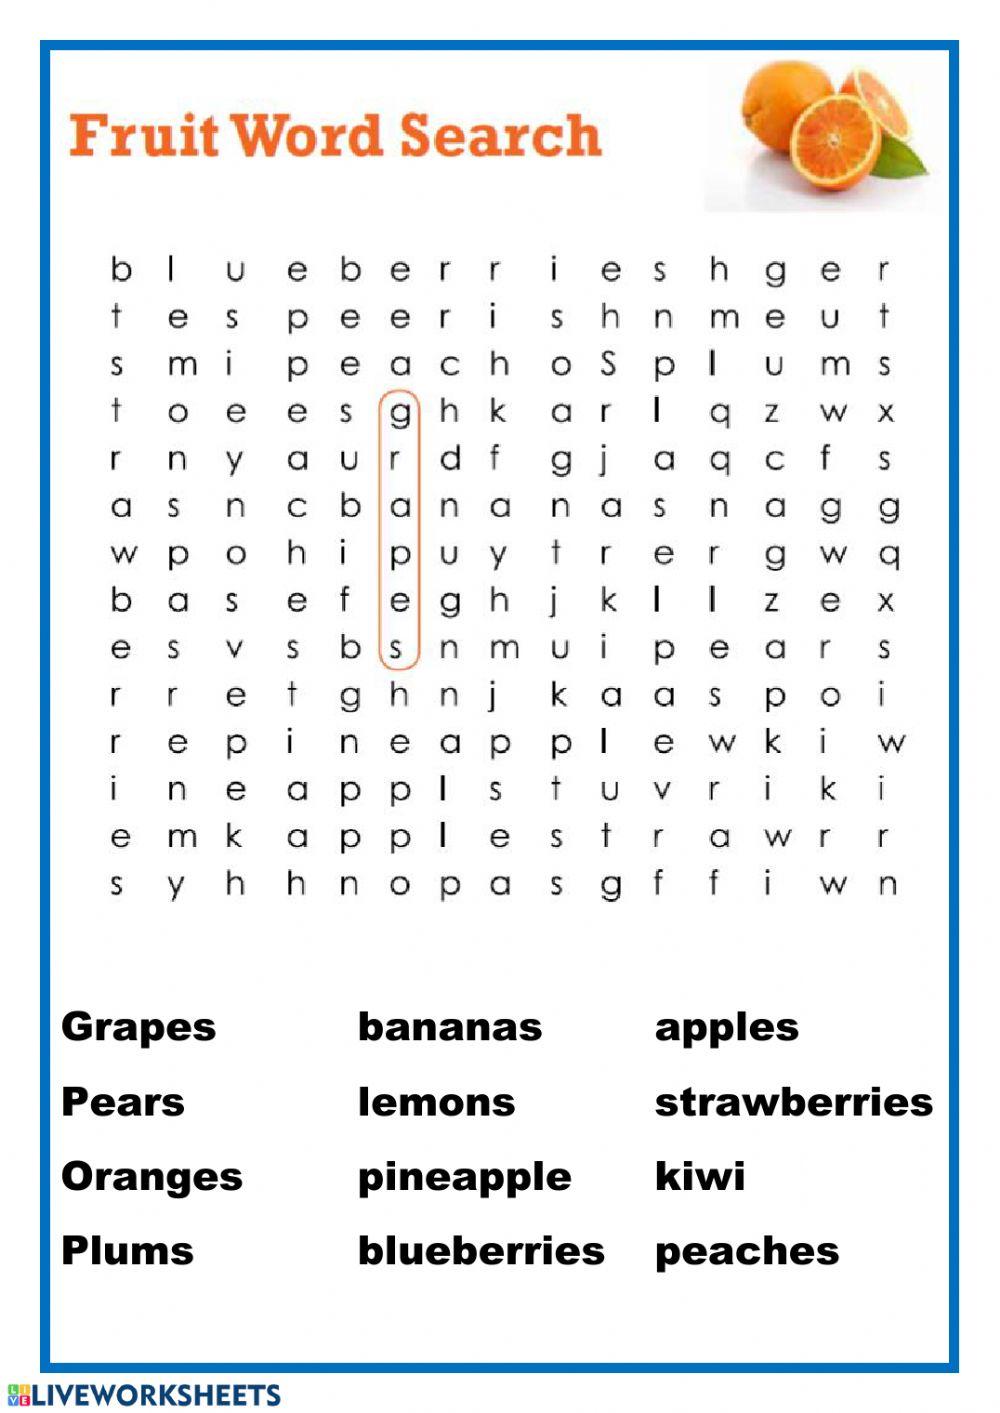 Fruit wordsearch